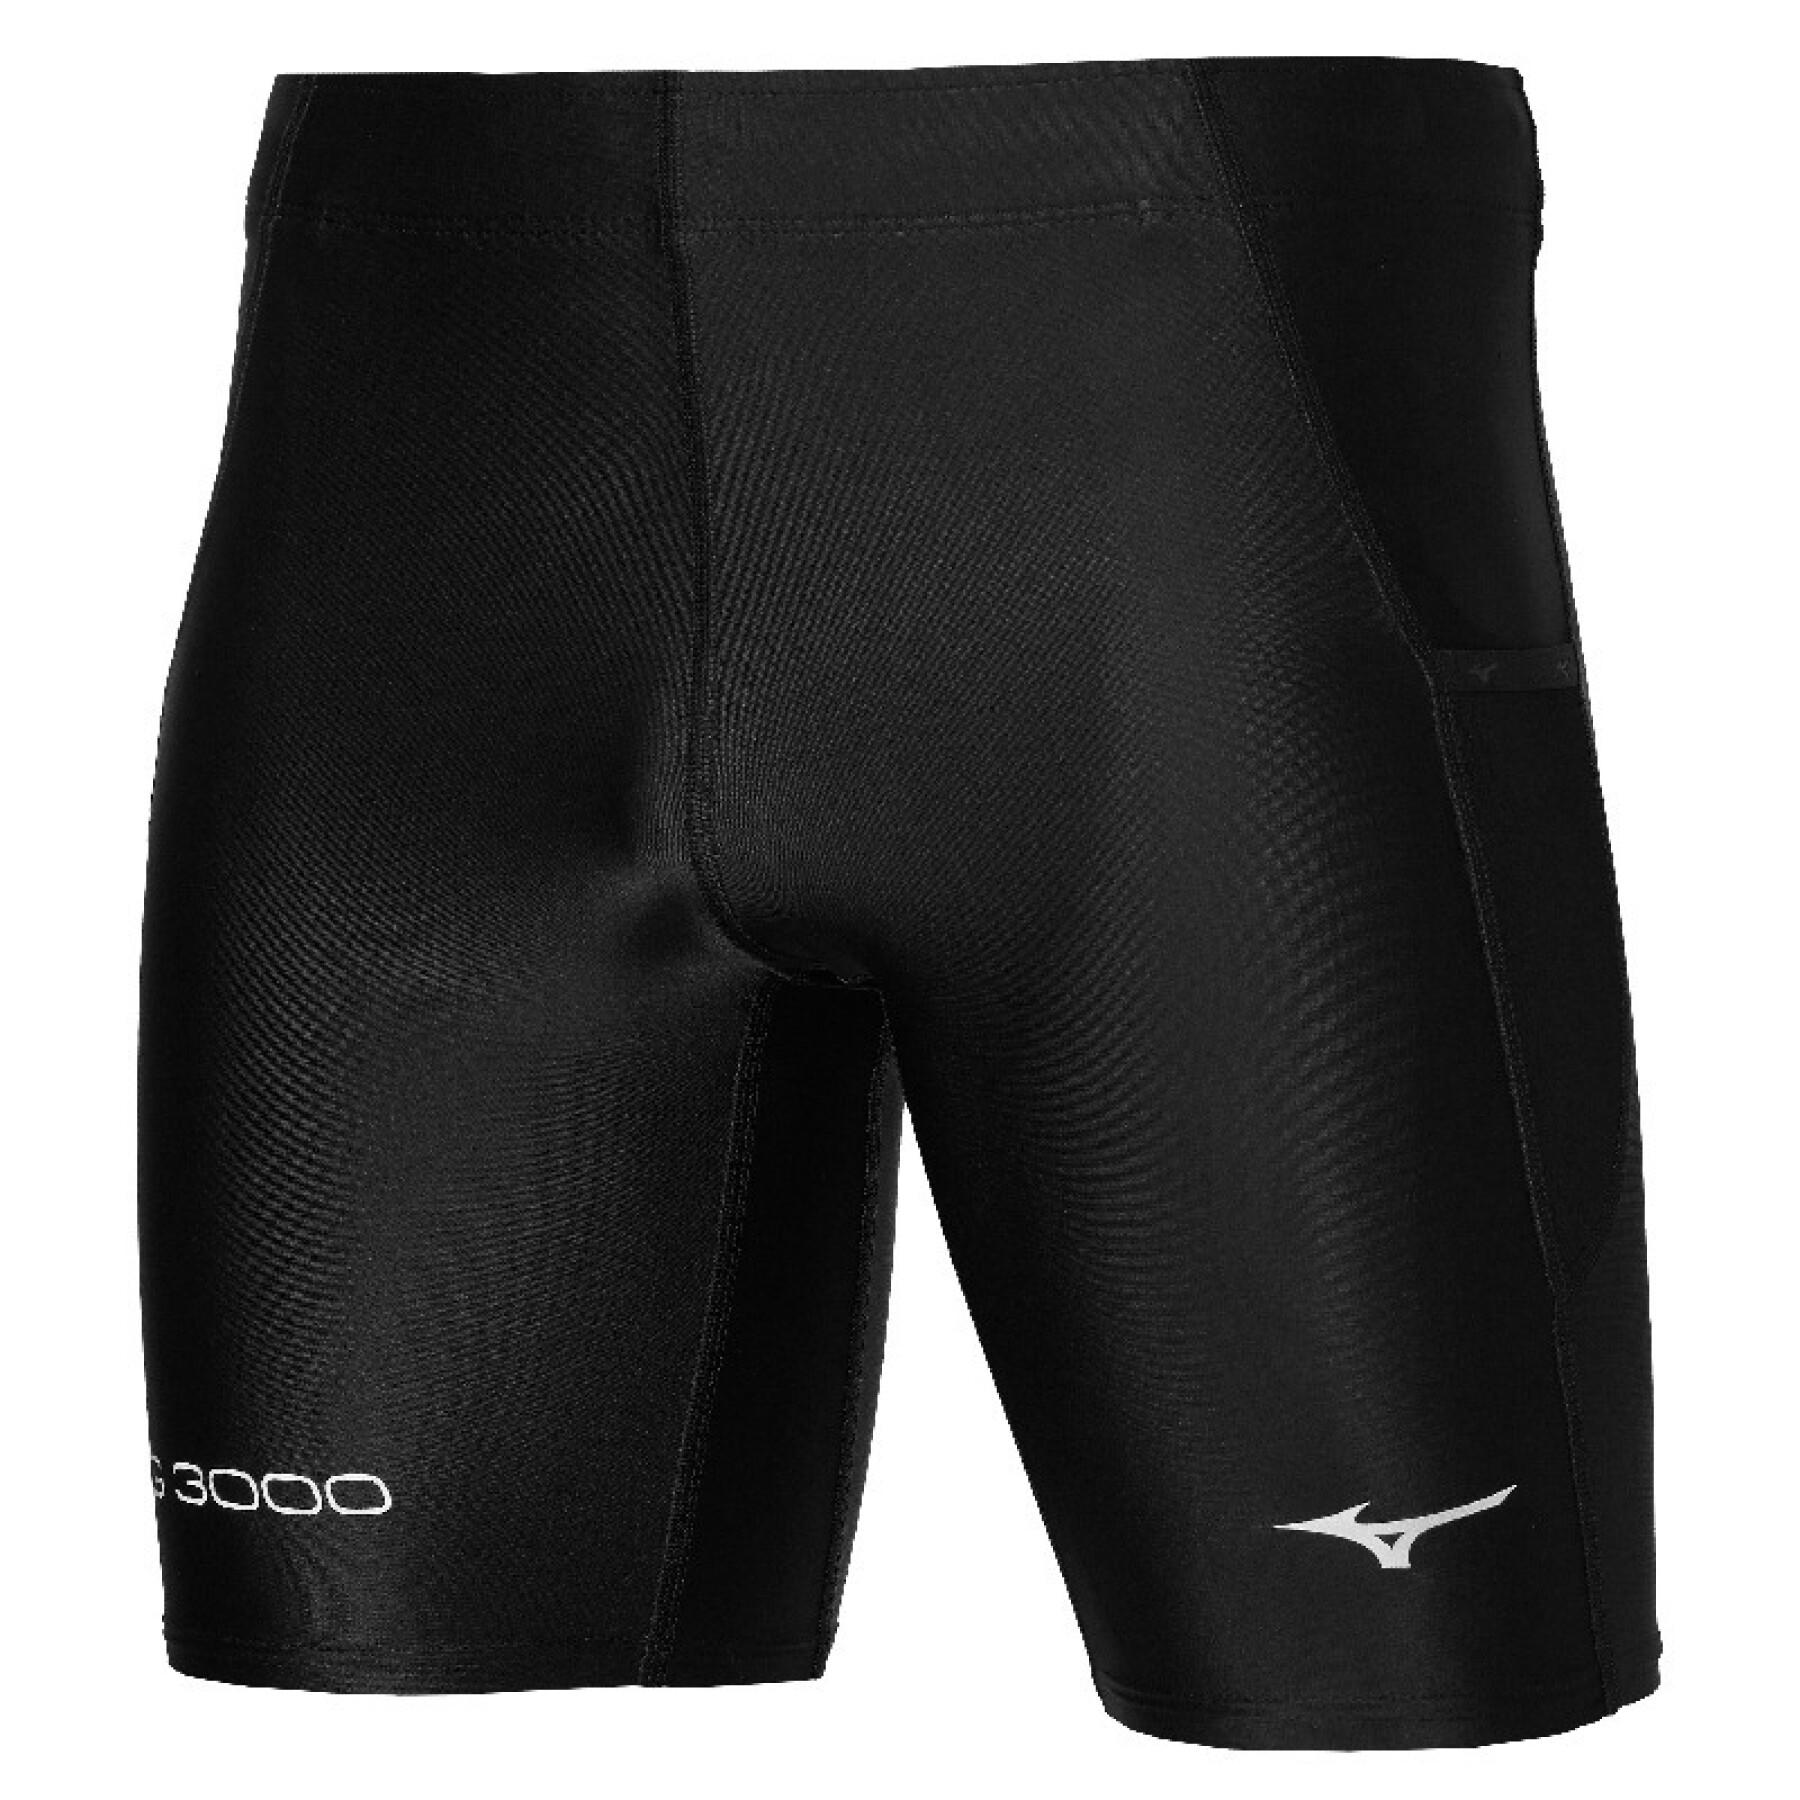 Mid shorts Mizuno BG3000